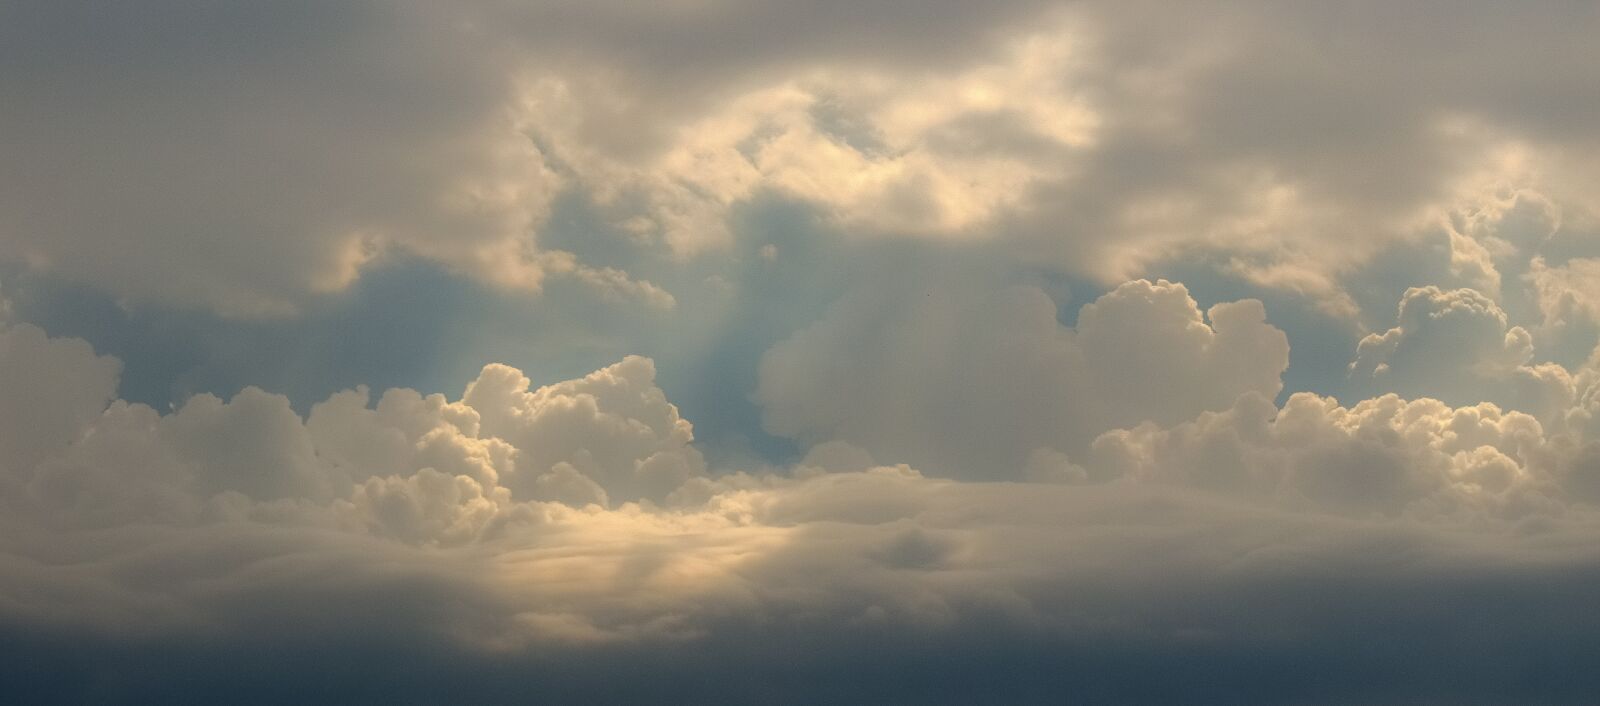 Nikon D3300 sample photo. Clouds, sky, nature photography